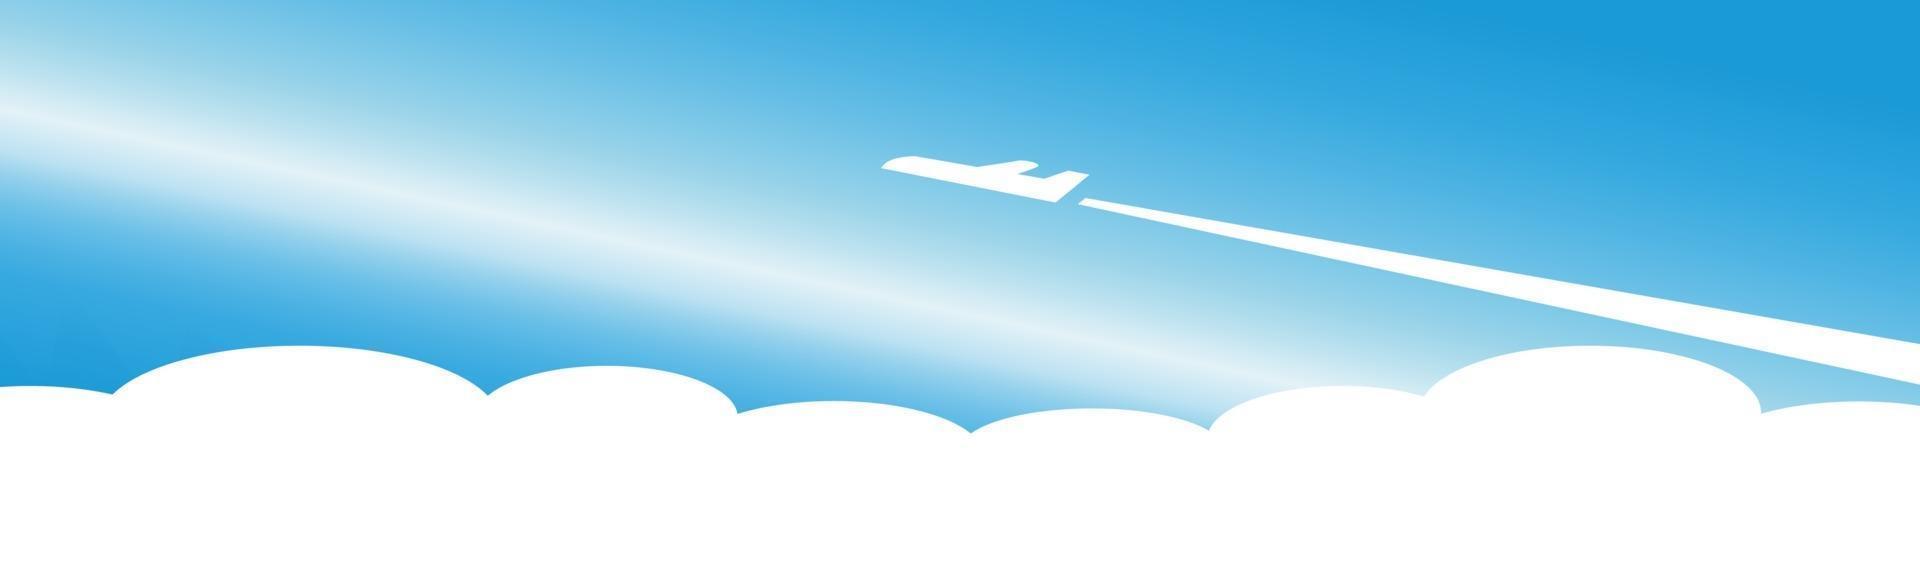 silueta de un avión despegando sobre un fondo azul n - vector